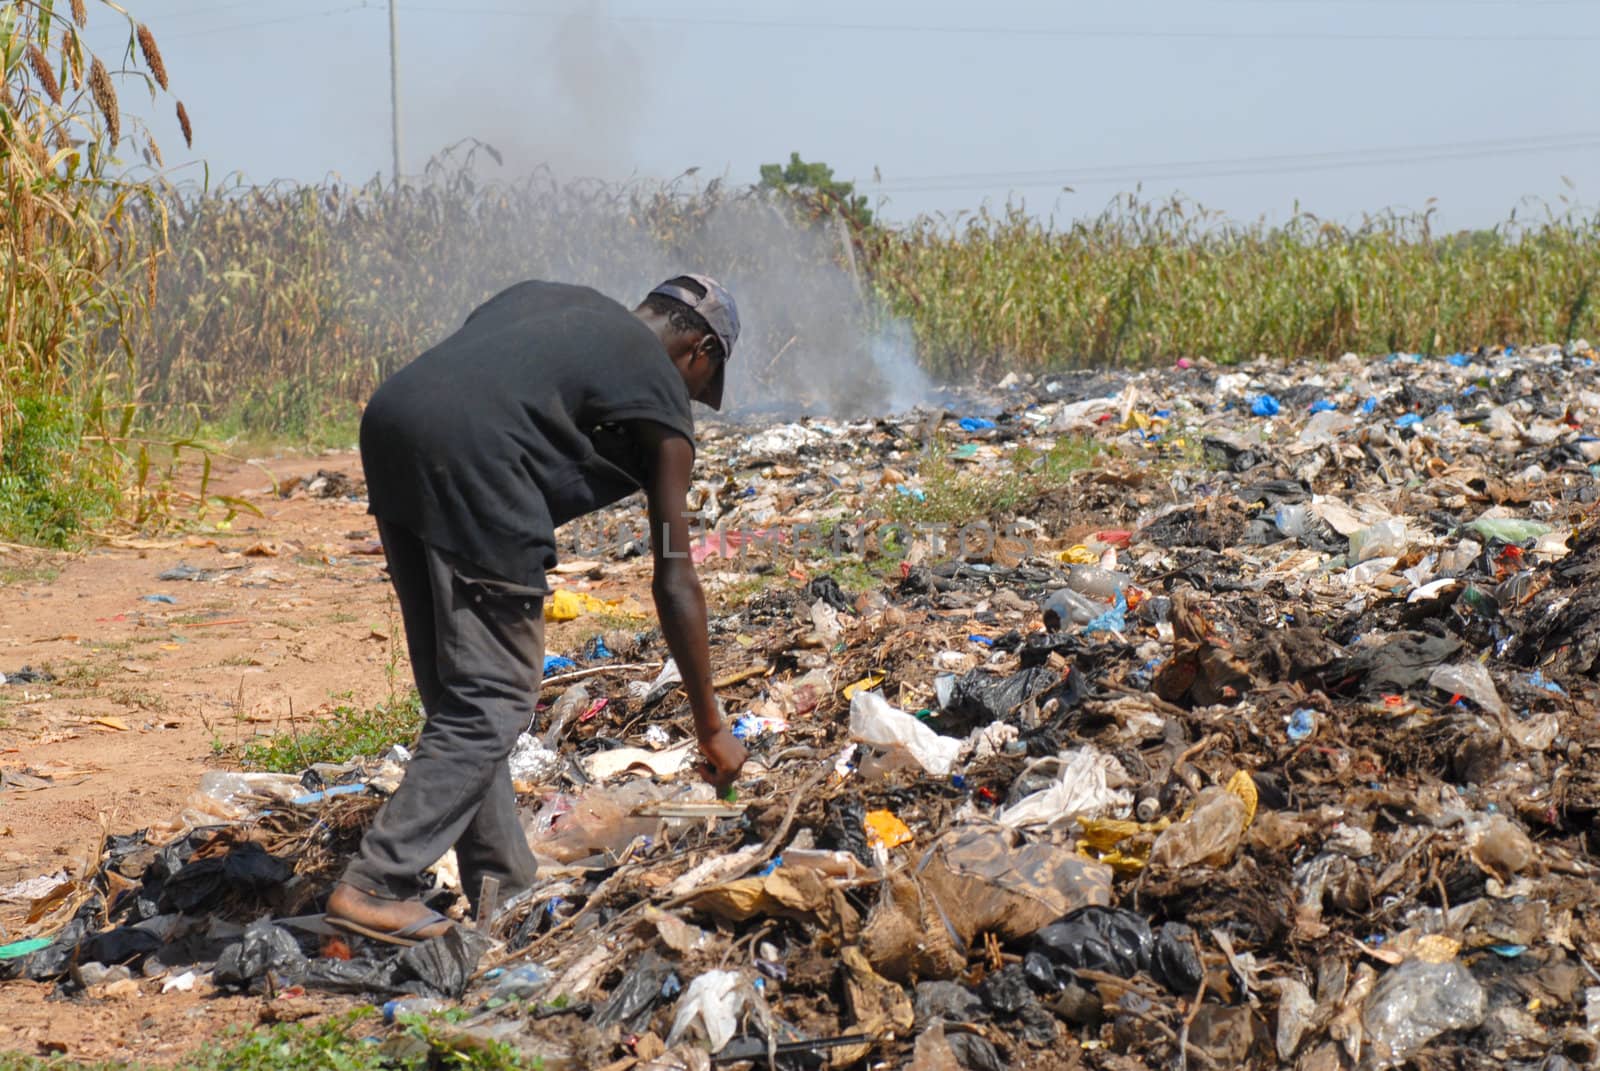 landfill in the city of Ouagadougou, Burkina Faso